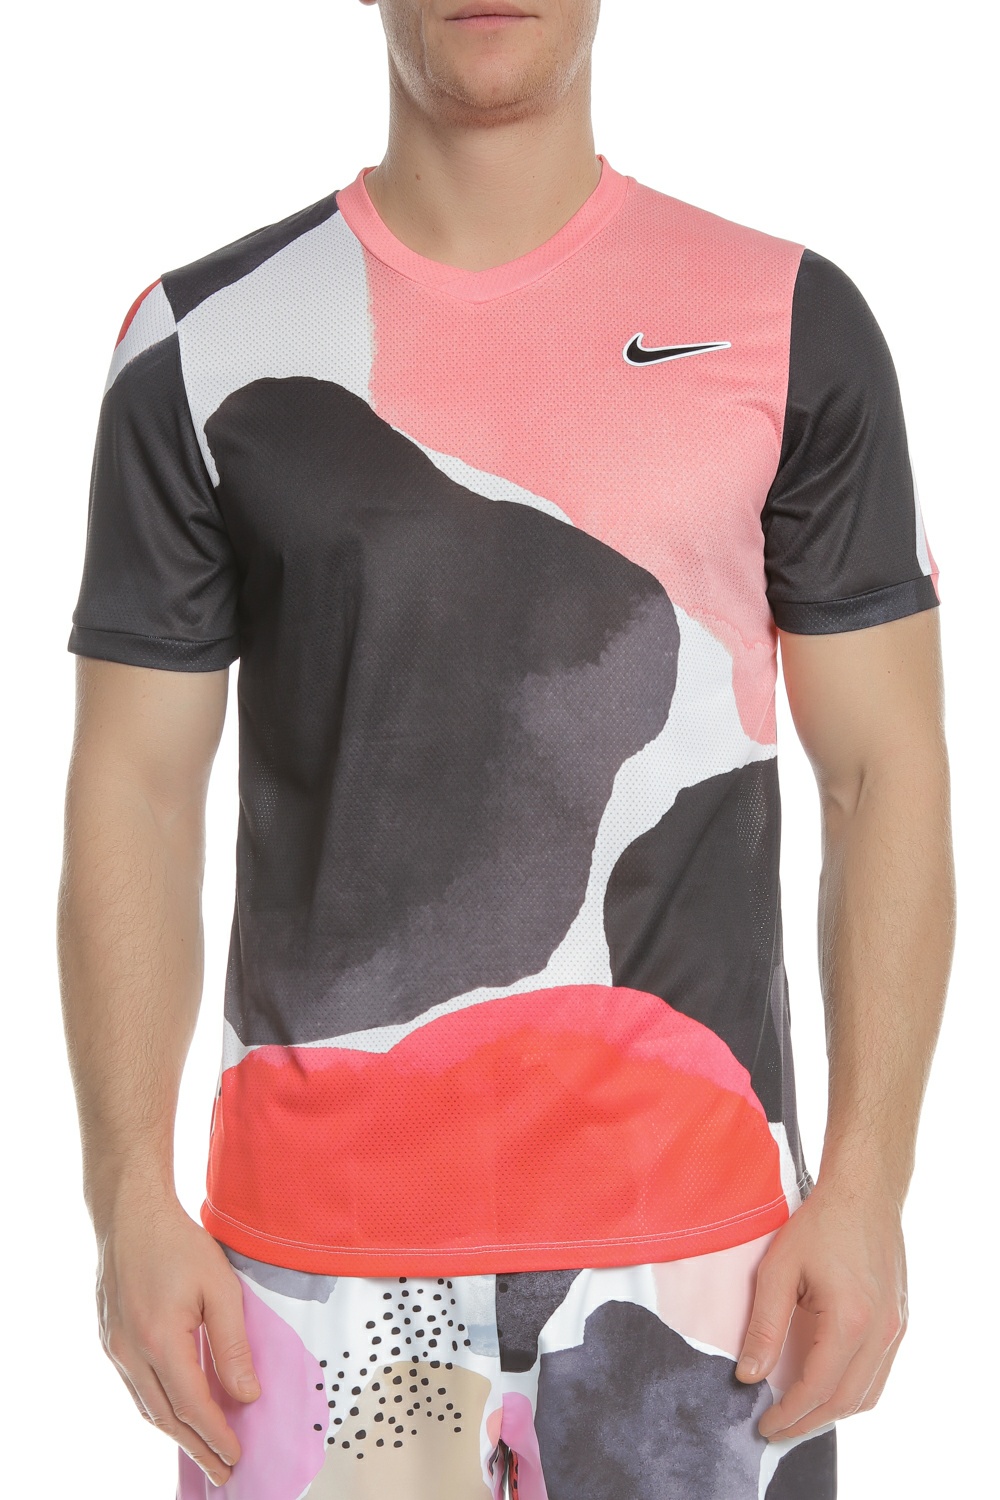 Ανδρικά/Ρούχα/Αθλητικά/T-shirt NIKE - Ανδρική μπλούζα τένις NIKE NKCT CHLLNGR TOP SS MB NT2 με μοτίβο